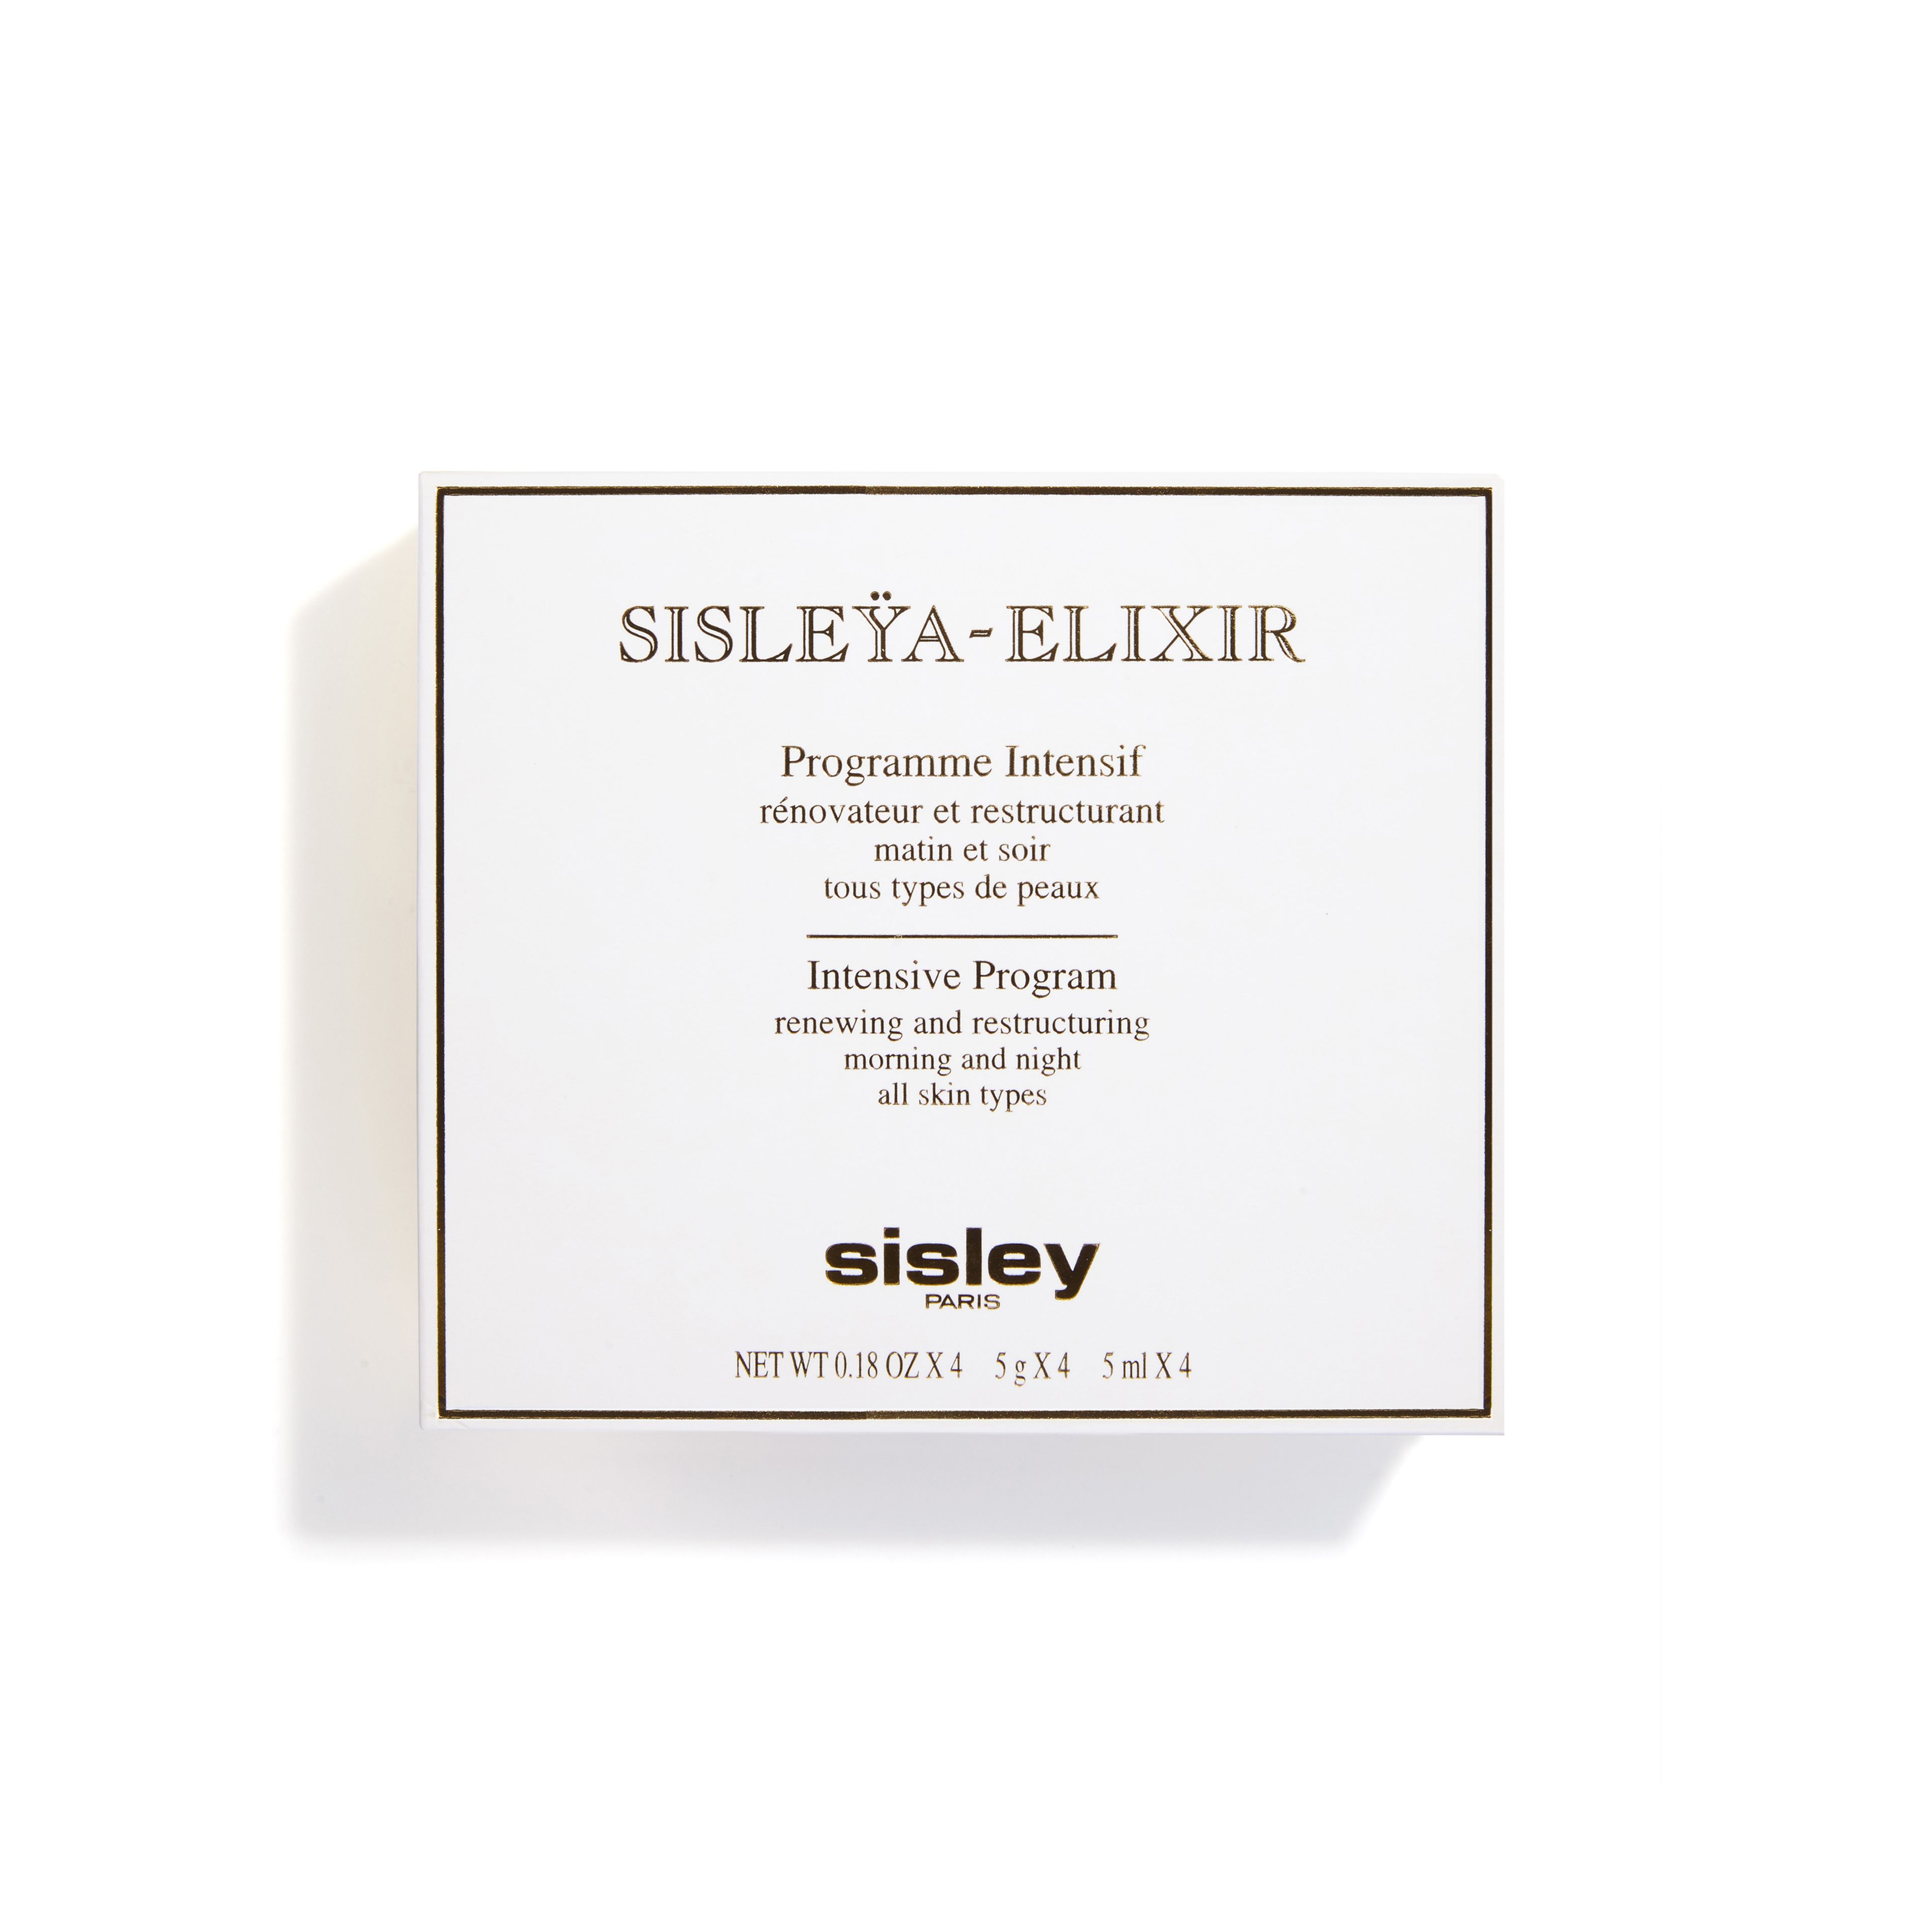 SISLEY Sisleÿa-elixir 2